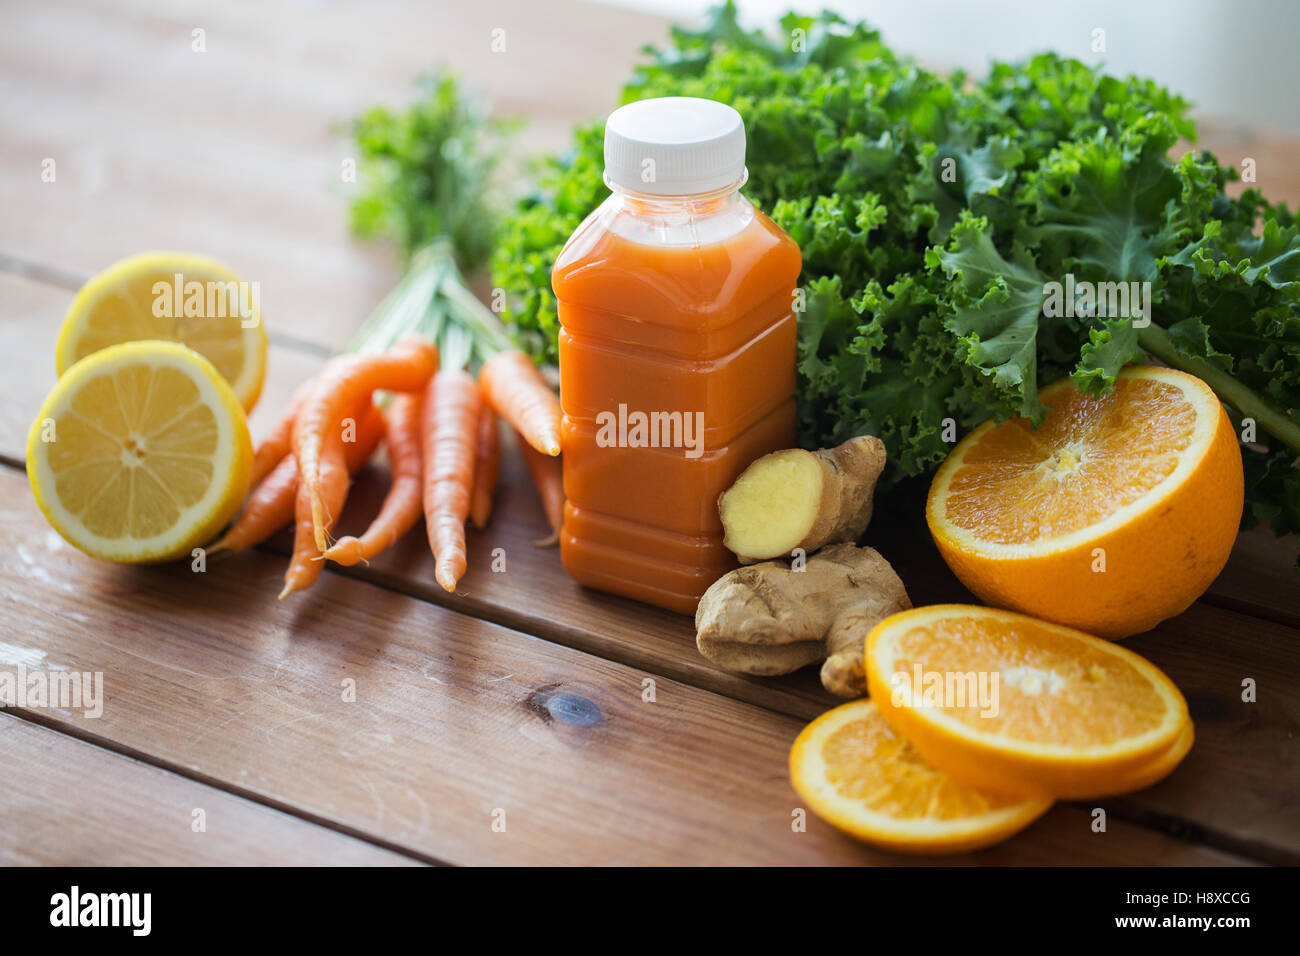 Bouteille avec du jus de carotte, fruits et légumes Banque D'Images